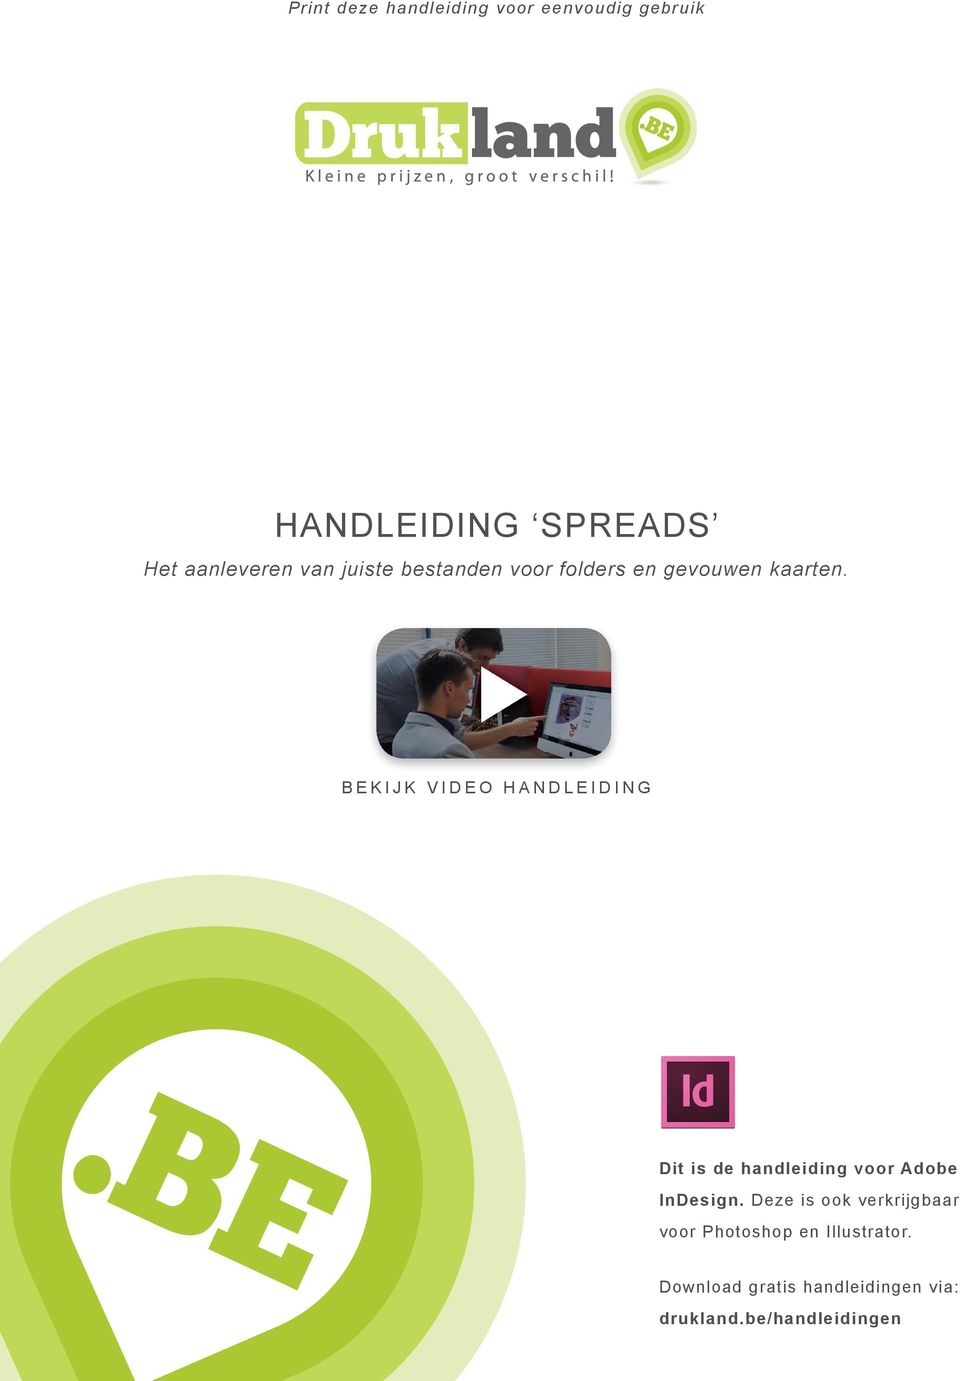 BEKIJK VIDEO HANDLEIDING Dit is de handleiding voor Adobe InDesign.